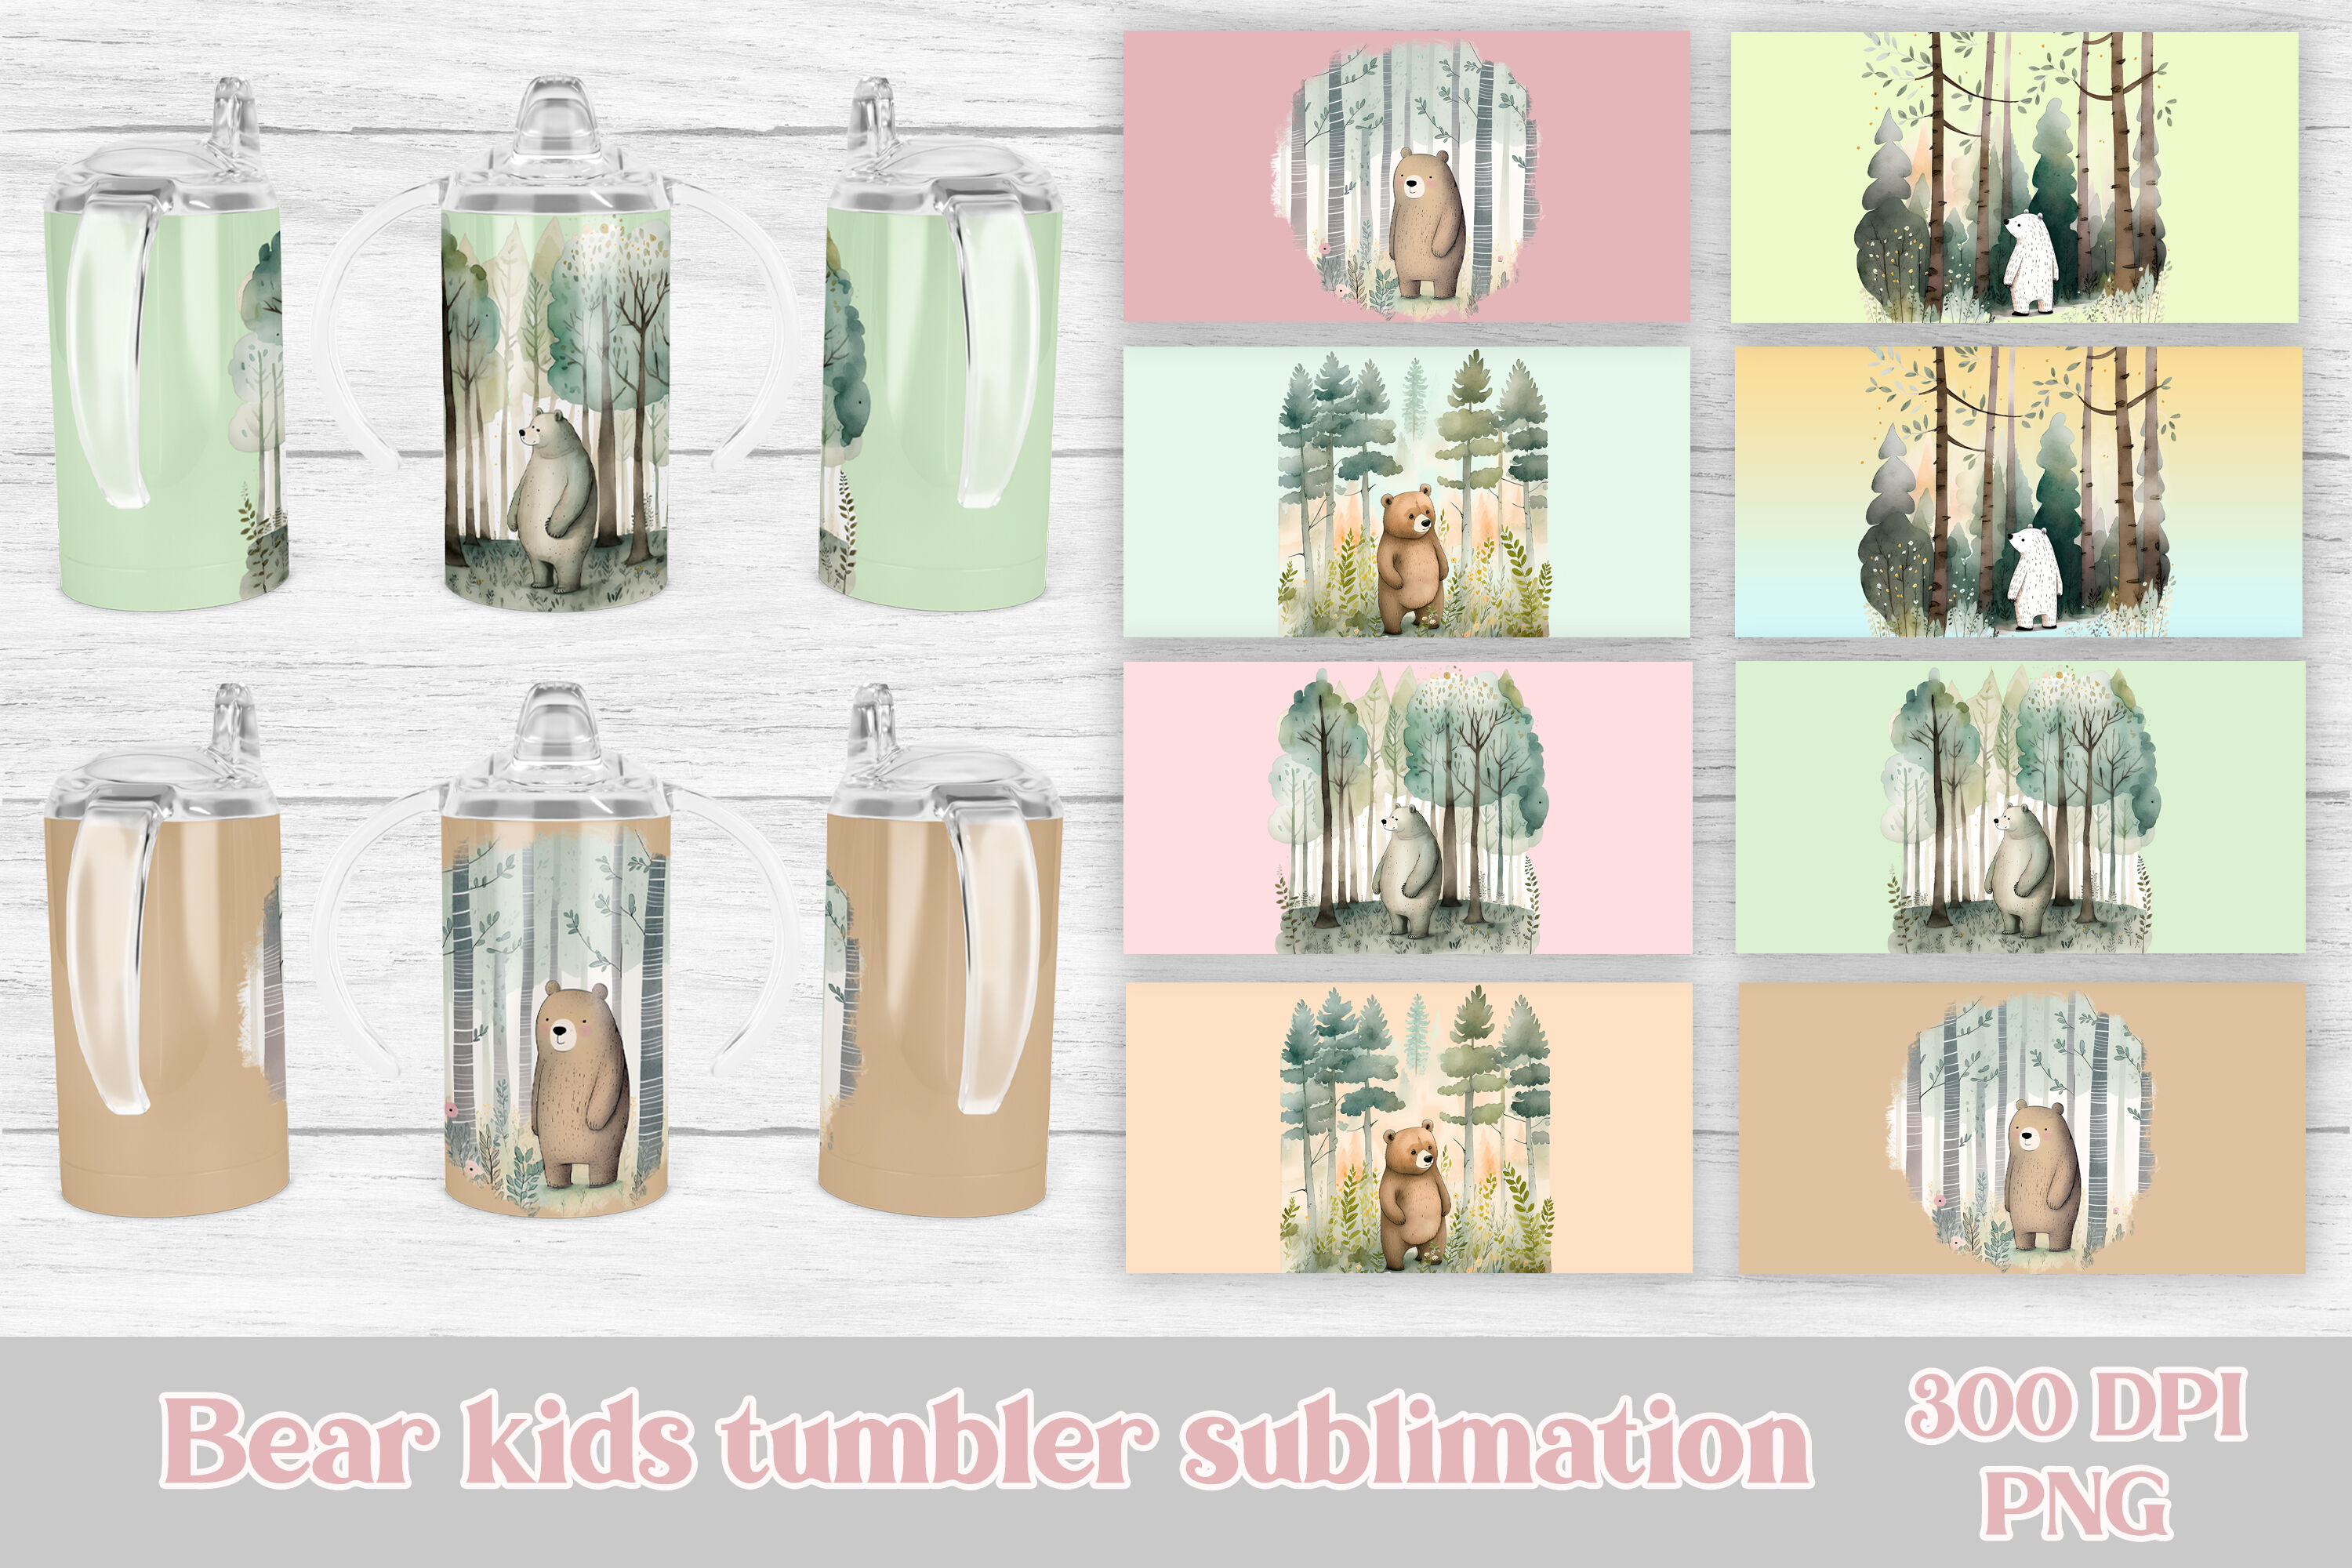 10 Best Sippy Cup Sublimation Designs Bundle